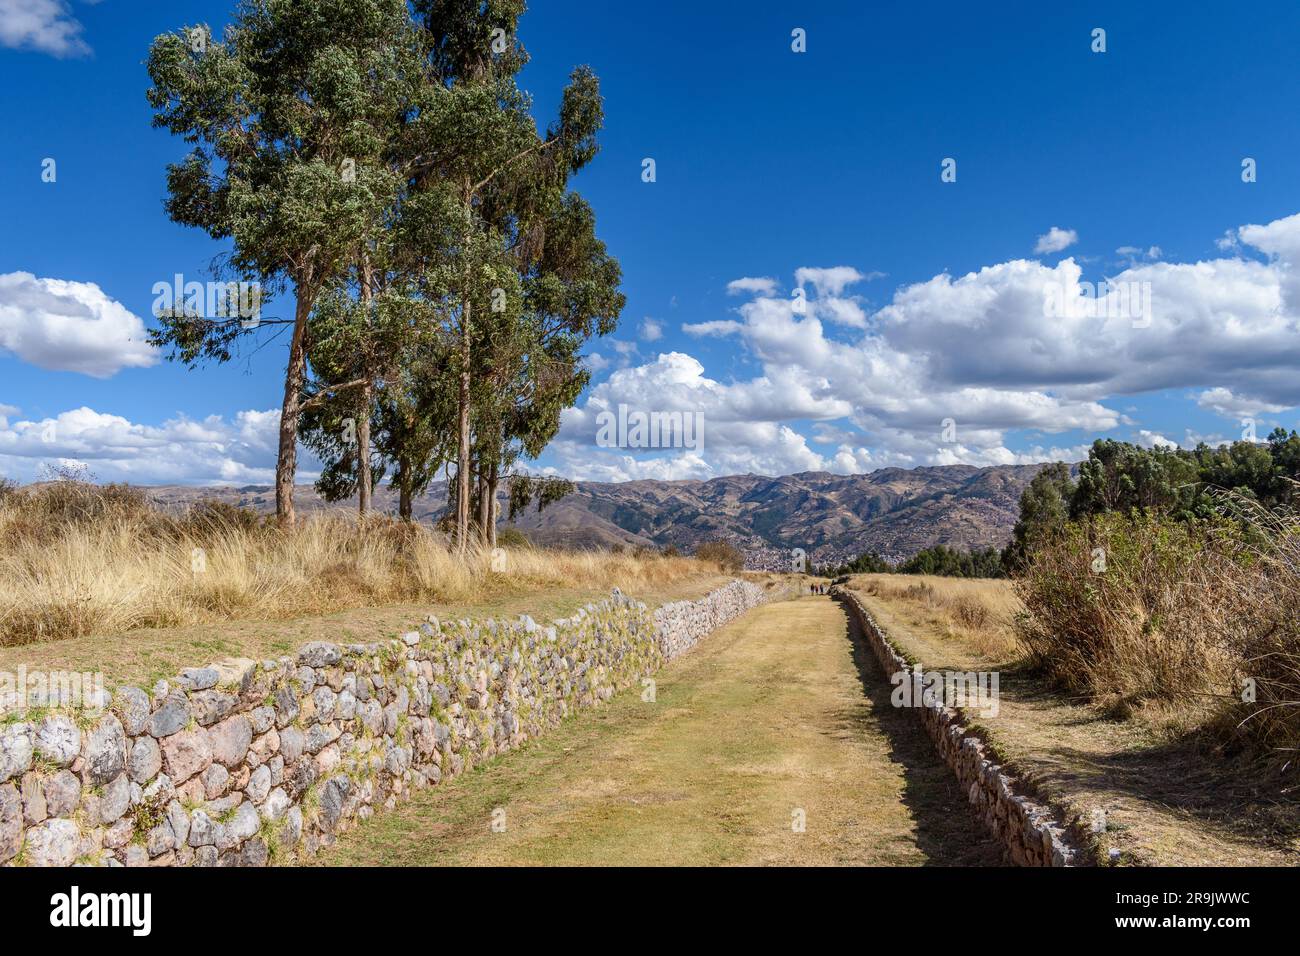 Il paesaggio della provincia di Urubamba, la vista sulle montagne e un sentiero affondato con pareti in pietra, un esempio dello stile architettonico inca. Foto Stock